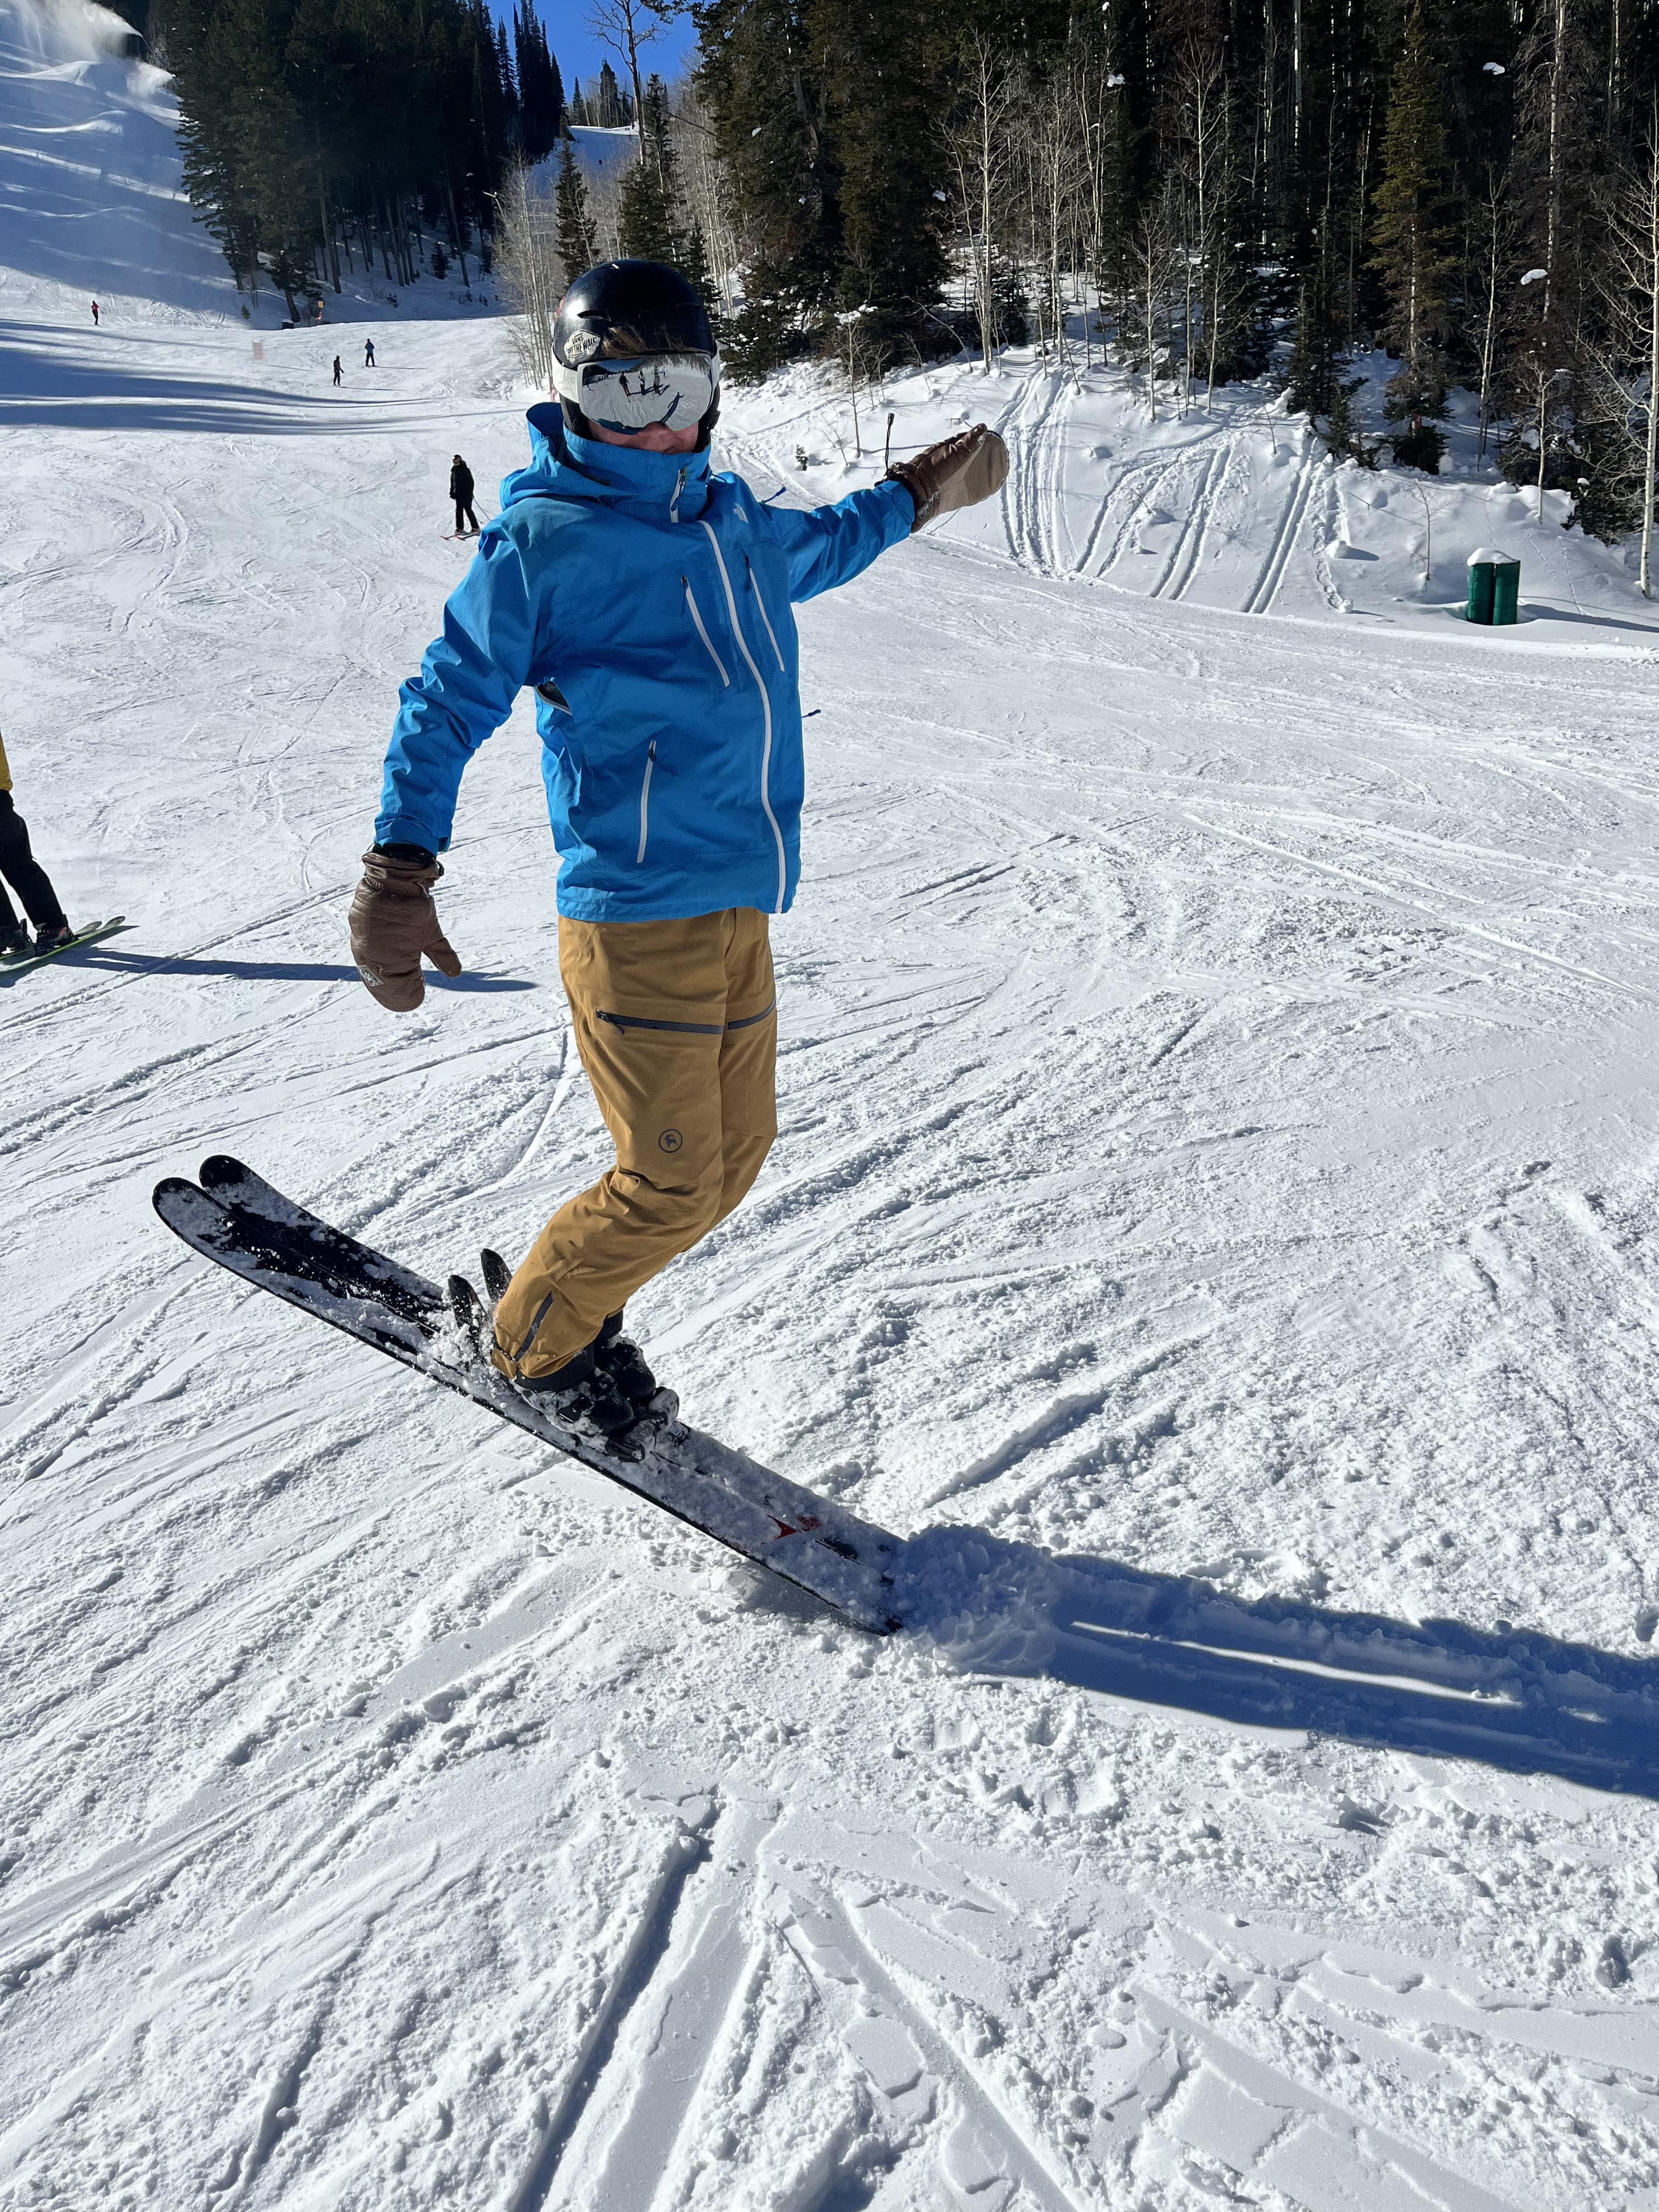 standing on ski tips